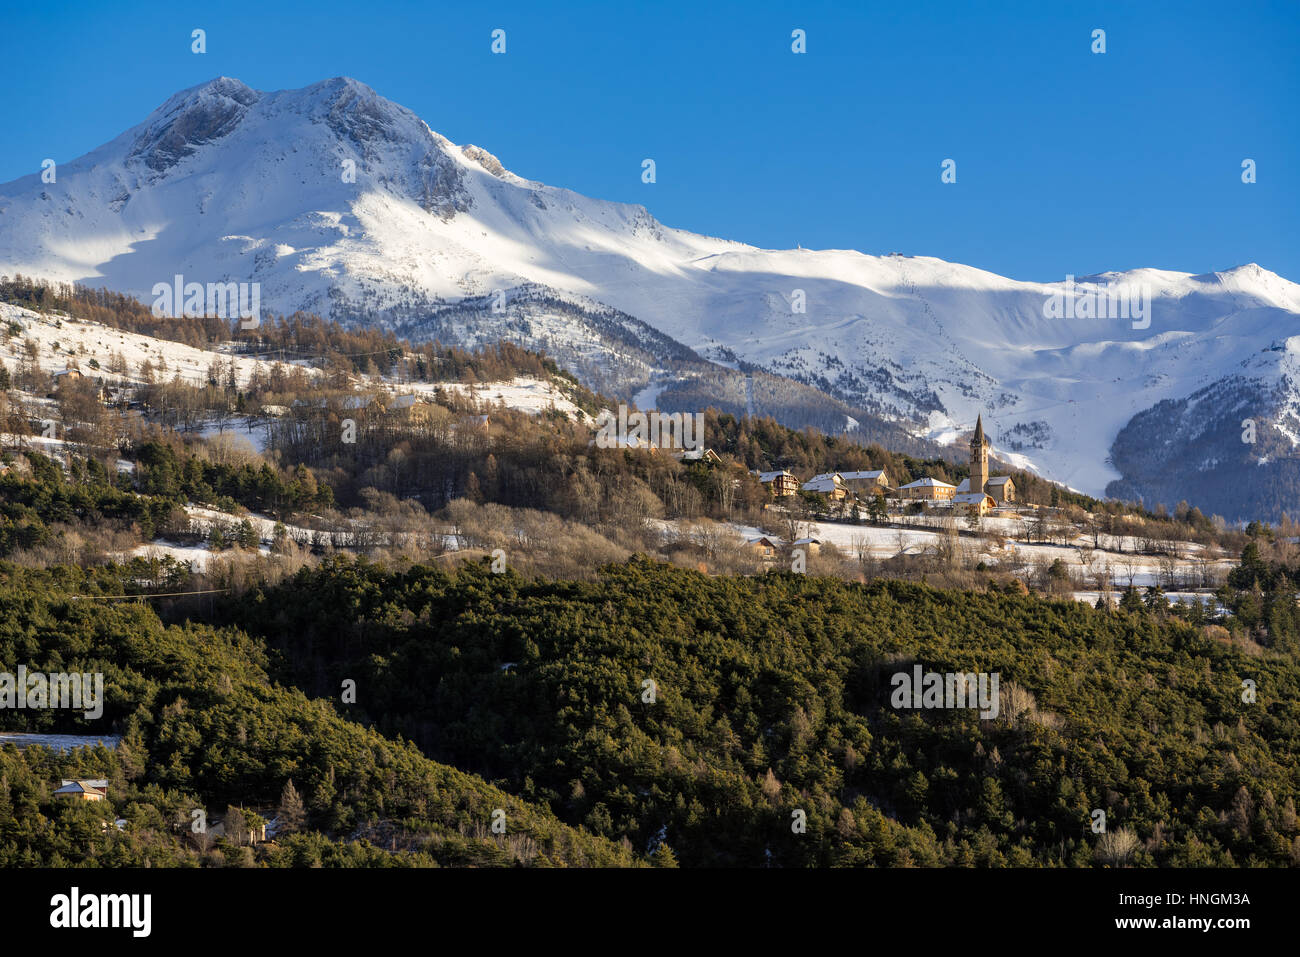 Village de Saint-Sauveur près d'Embrun avec vue d'hiver sur la station de ski des Orres. Hautes-Alpes, Alpes du Sud, France Banque D'Images